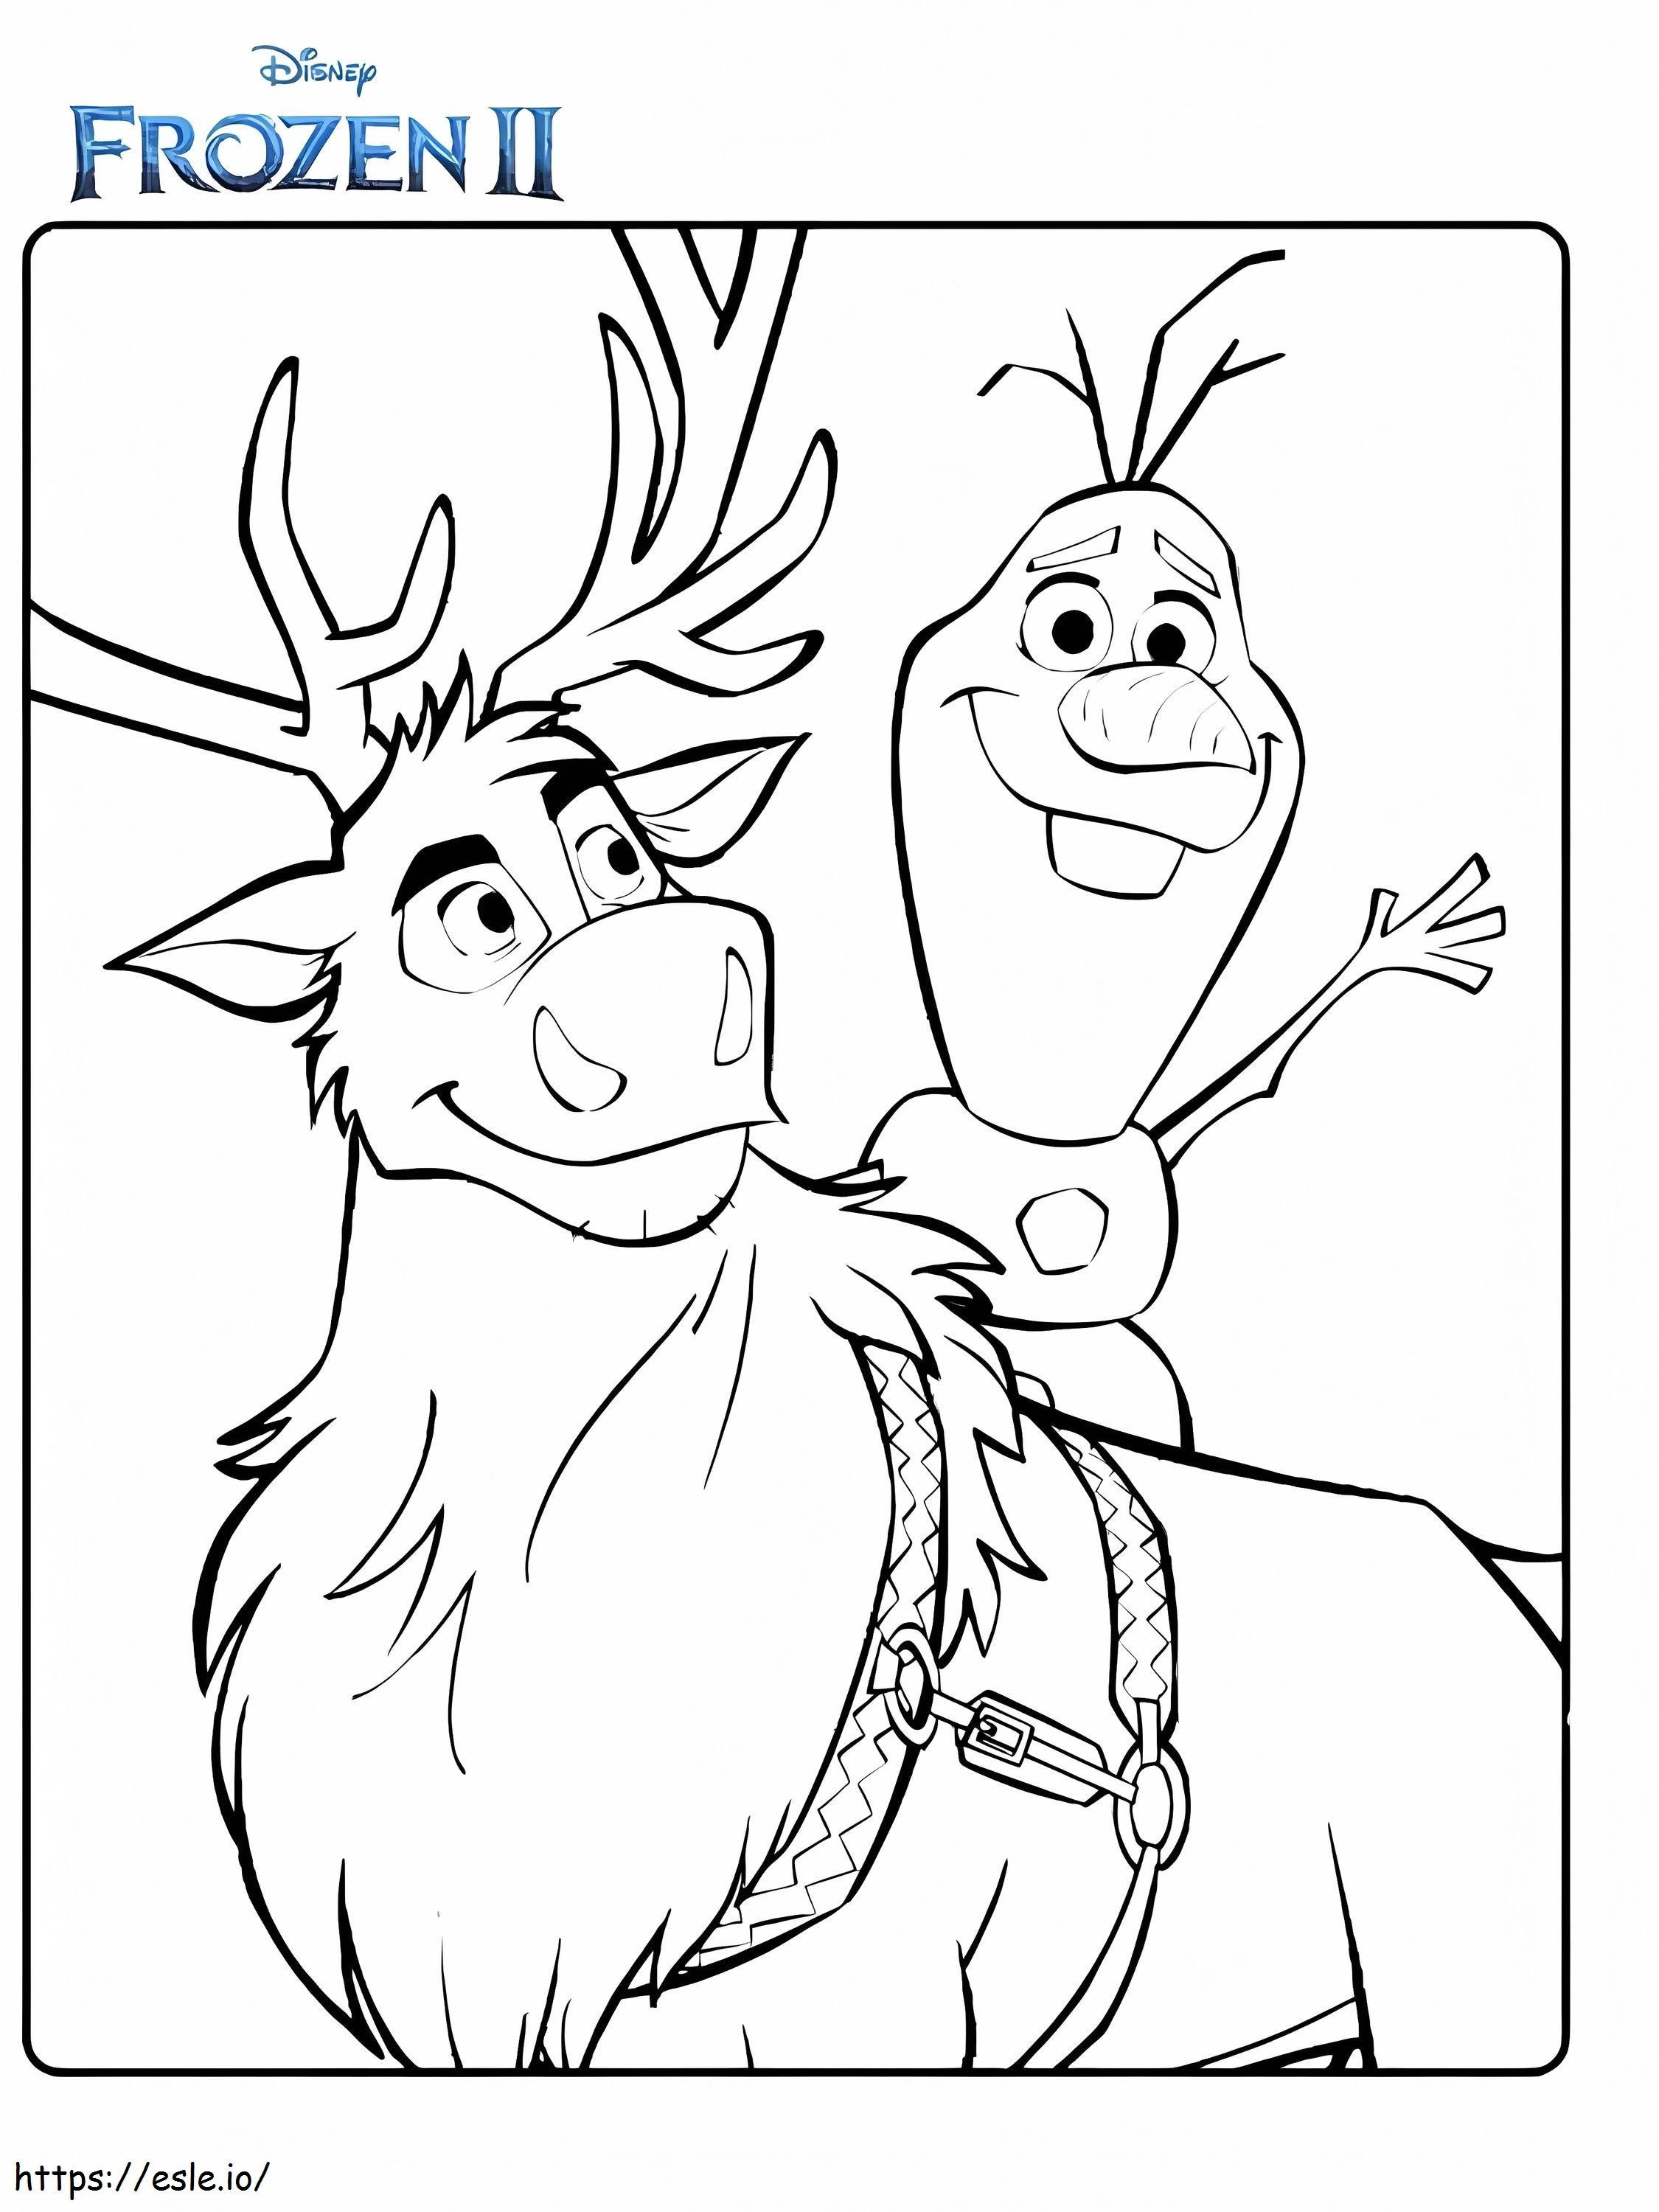 Olaf und Sven Die Eiskönigin 2 ausmalbilder